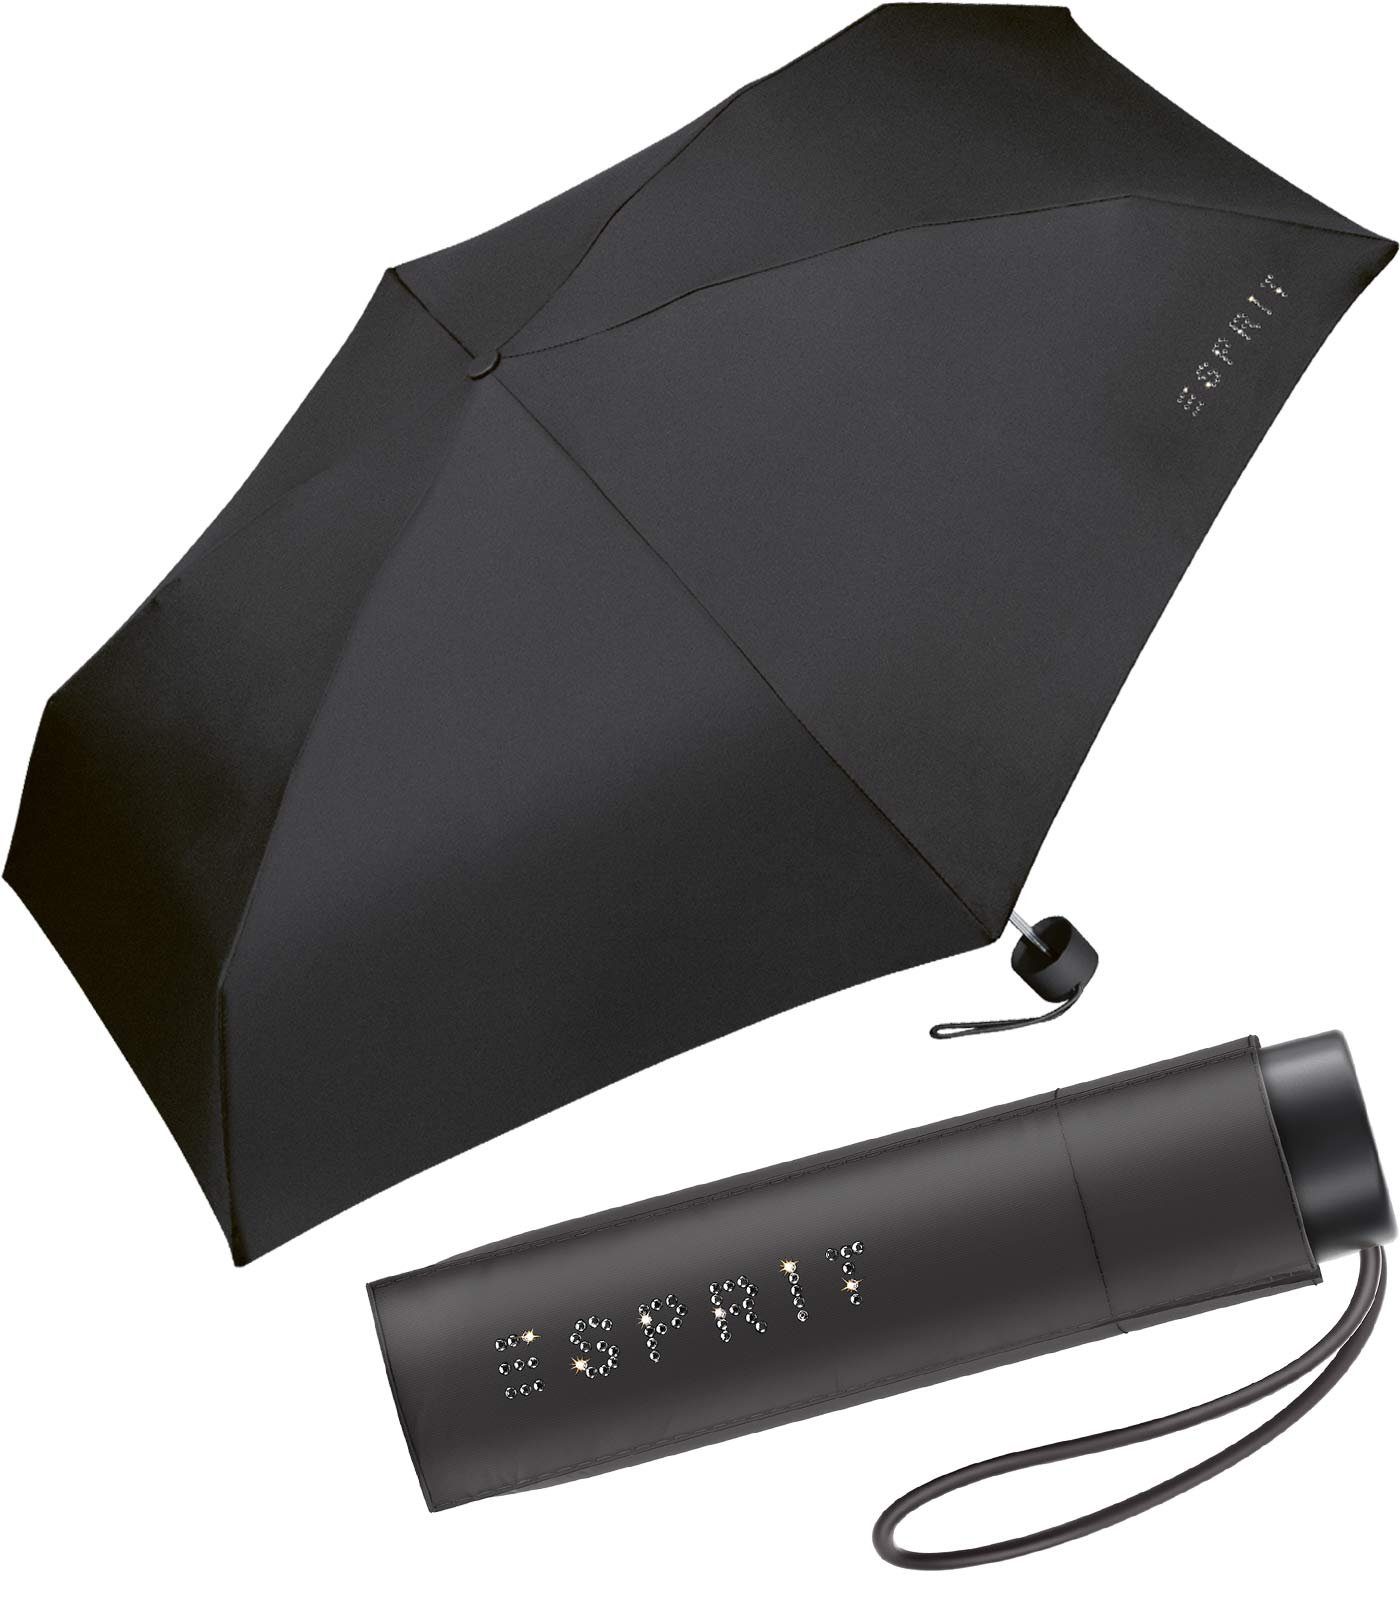 Esprit Langregenschirm Super Mini Schirm Petito sehr klein und leicht,  winzig, Regenschirm für Damen der Marke Esprit, Typ Taschenschirm mit  Handöffner.